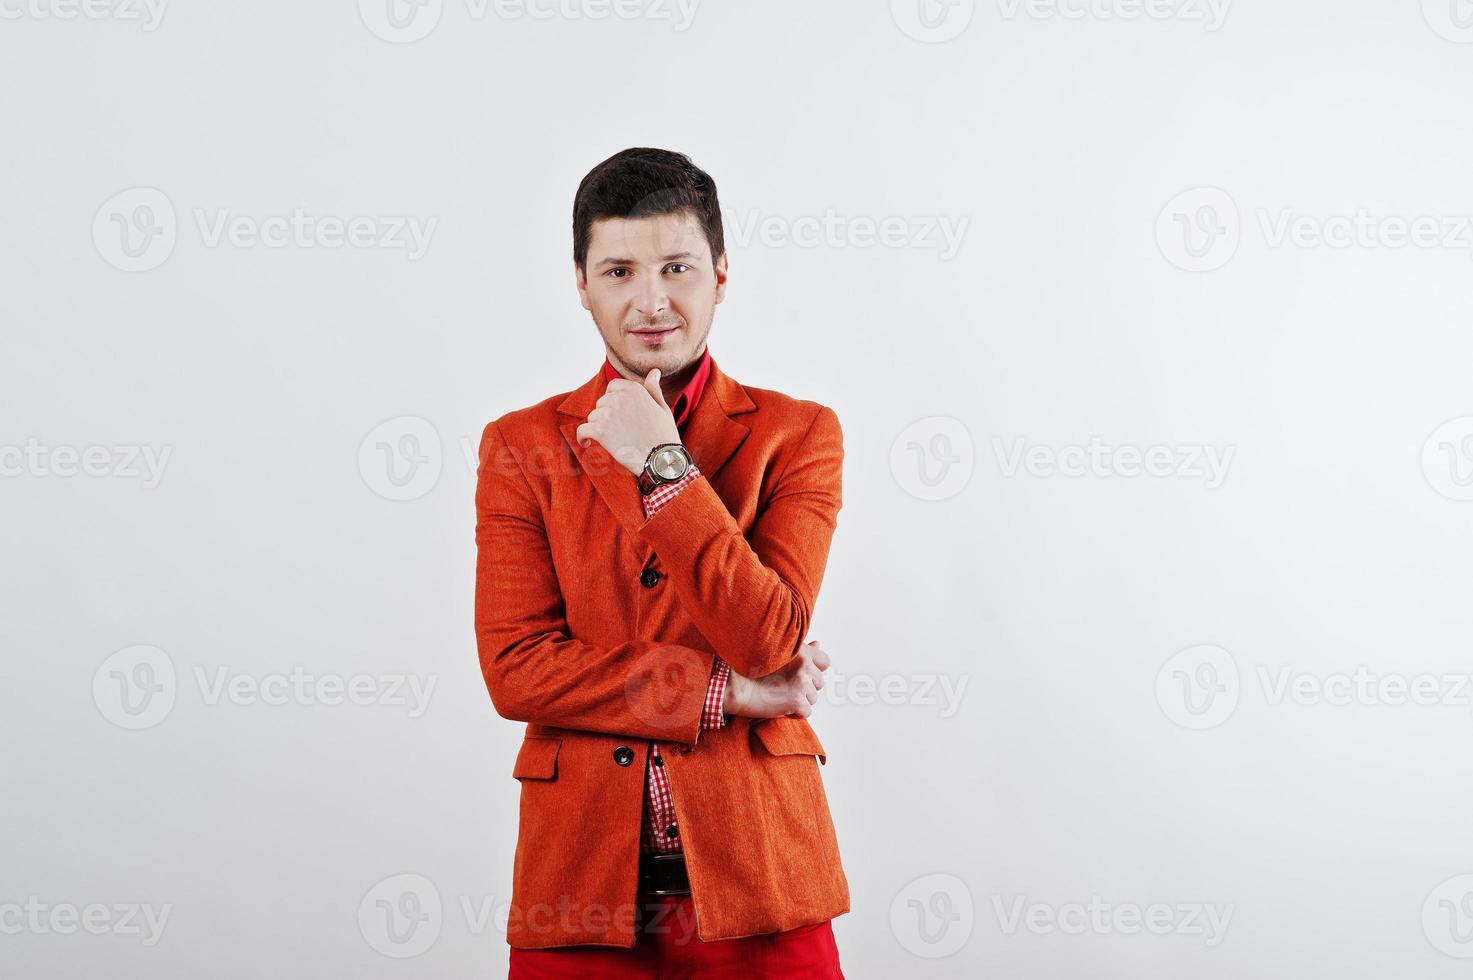 moda joven en traje naranja y pantalones rojos poses casuales en el estudio foto